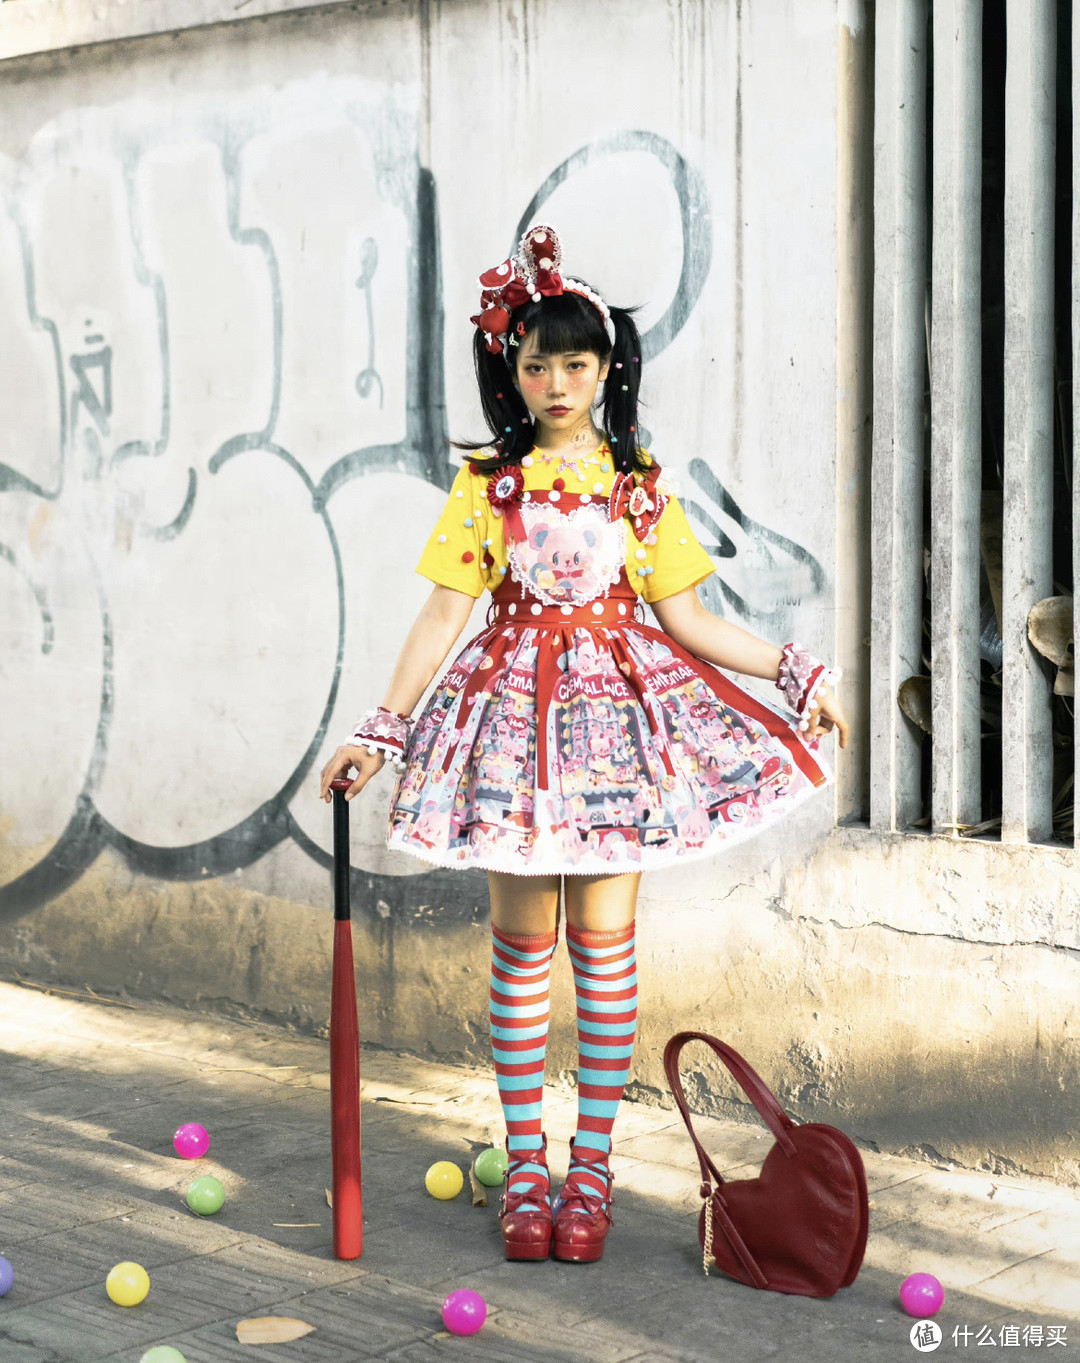 张扬又浮夸的呲甜lolita是亚文化的一种吗？